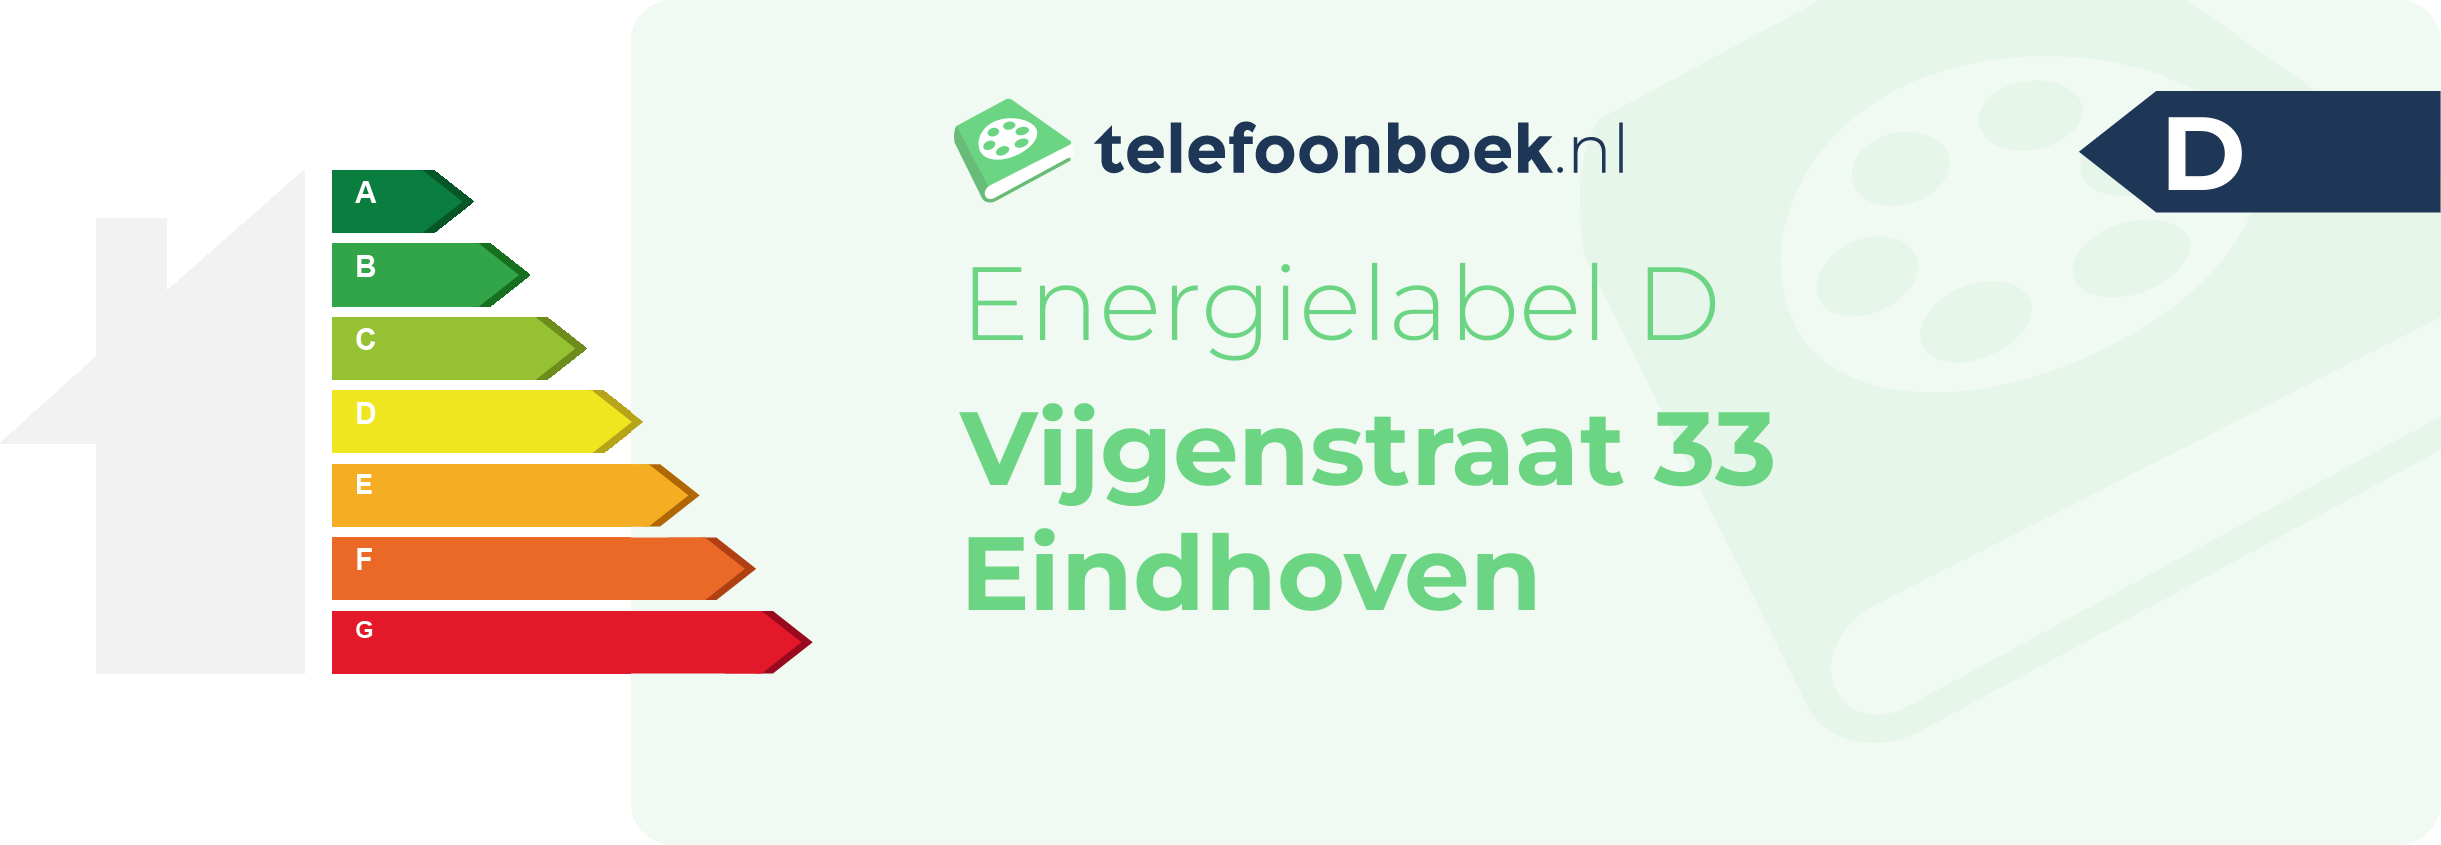 Energielabel Vijgenstraat 33 Eindhoven